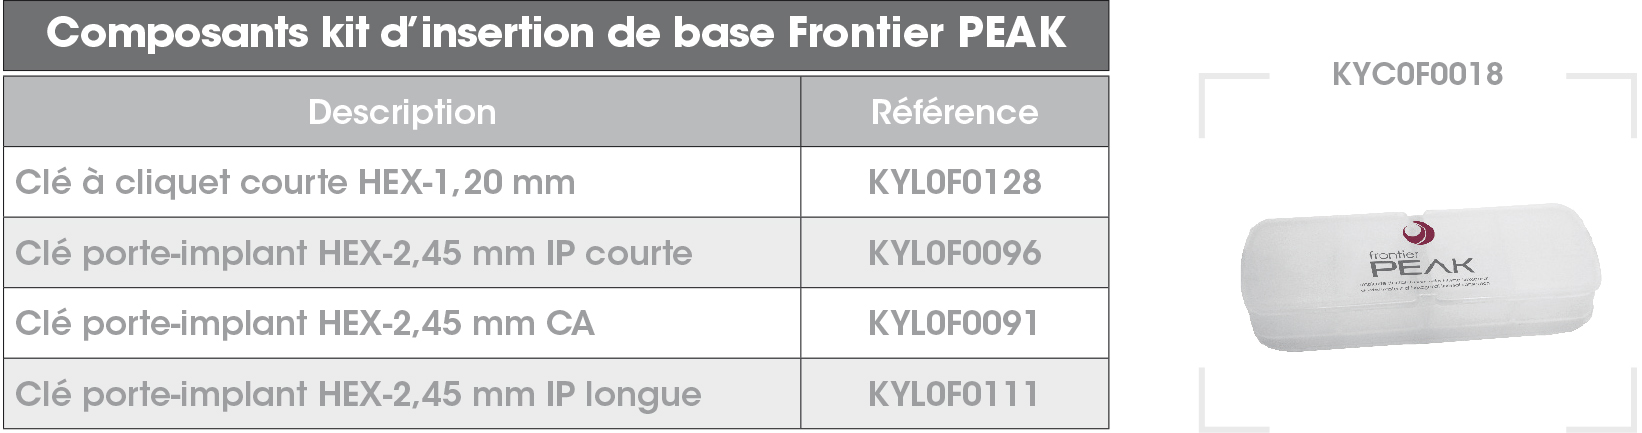 Kit base Frontier PEAK FR